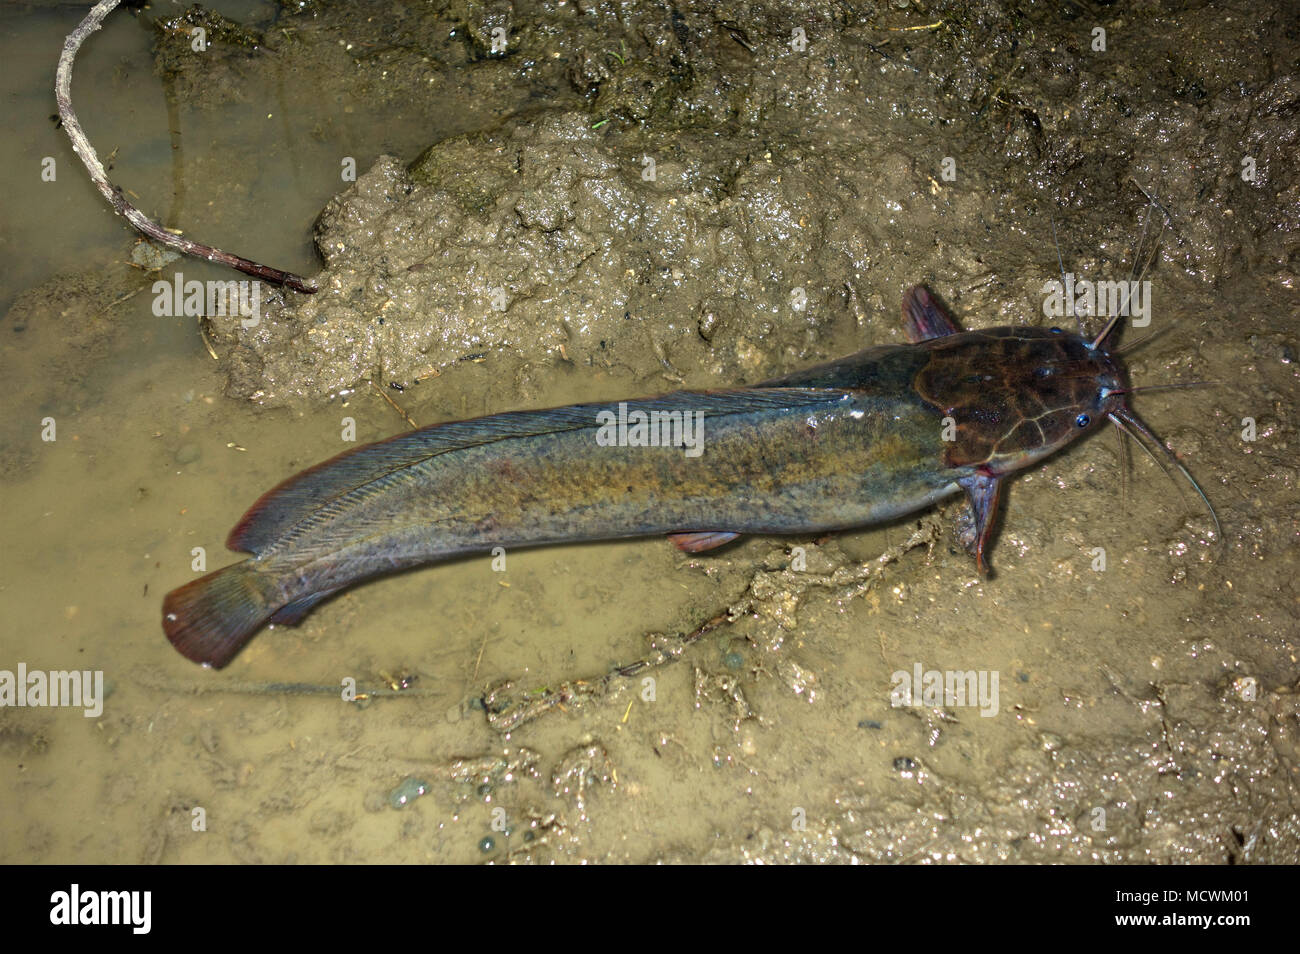 African sharptooth catfish, Clarias gariepinus, crawling